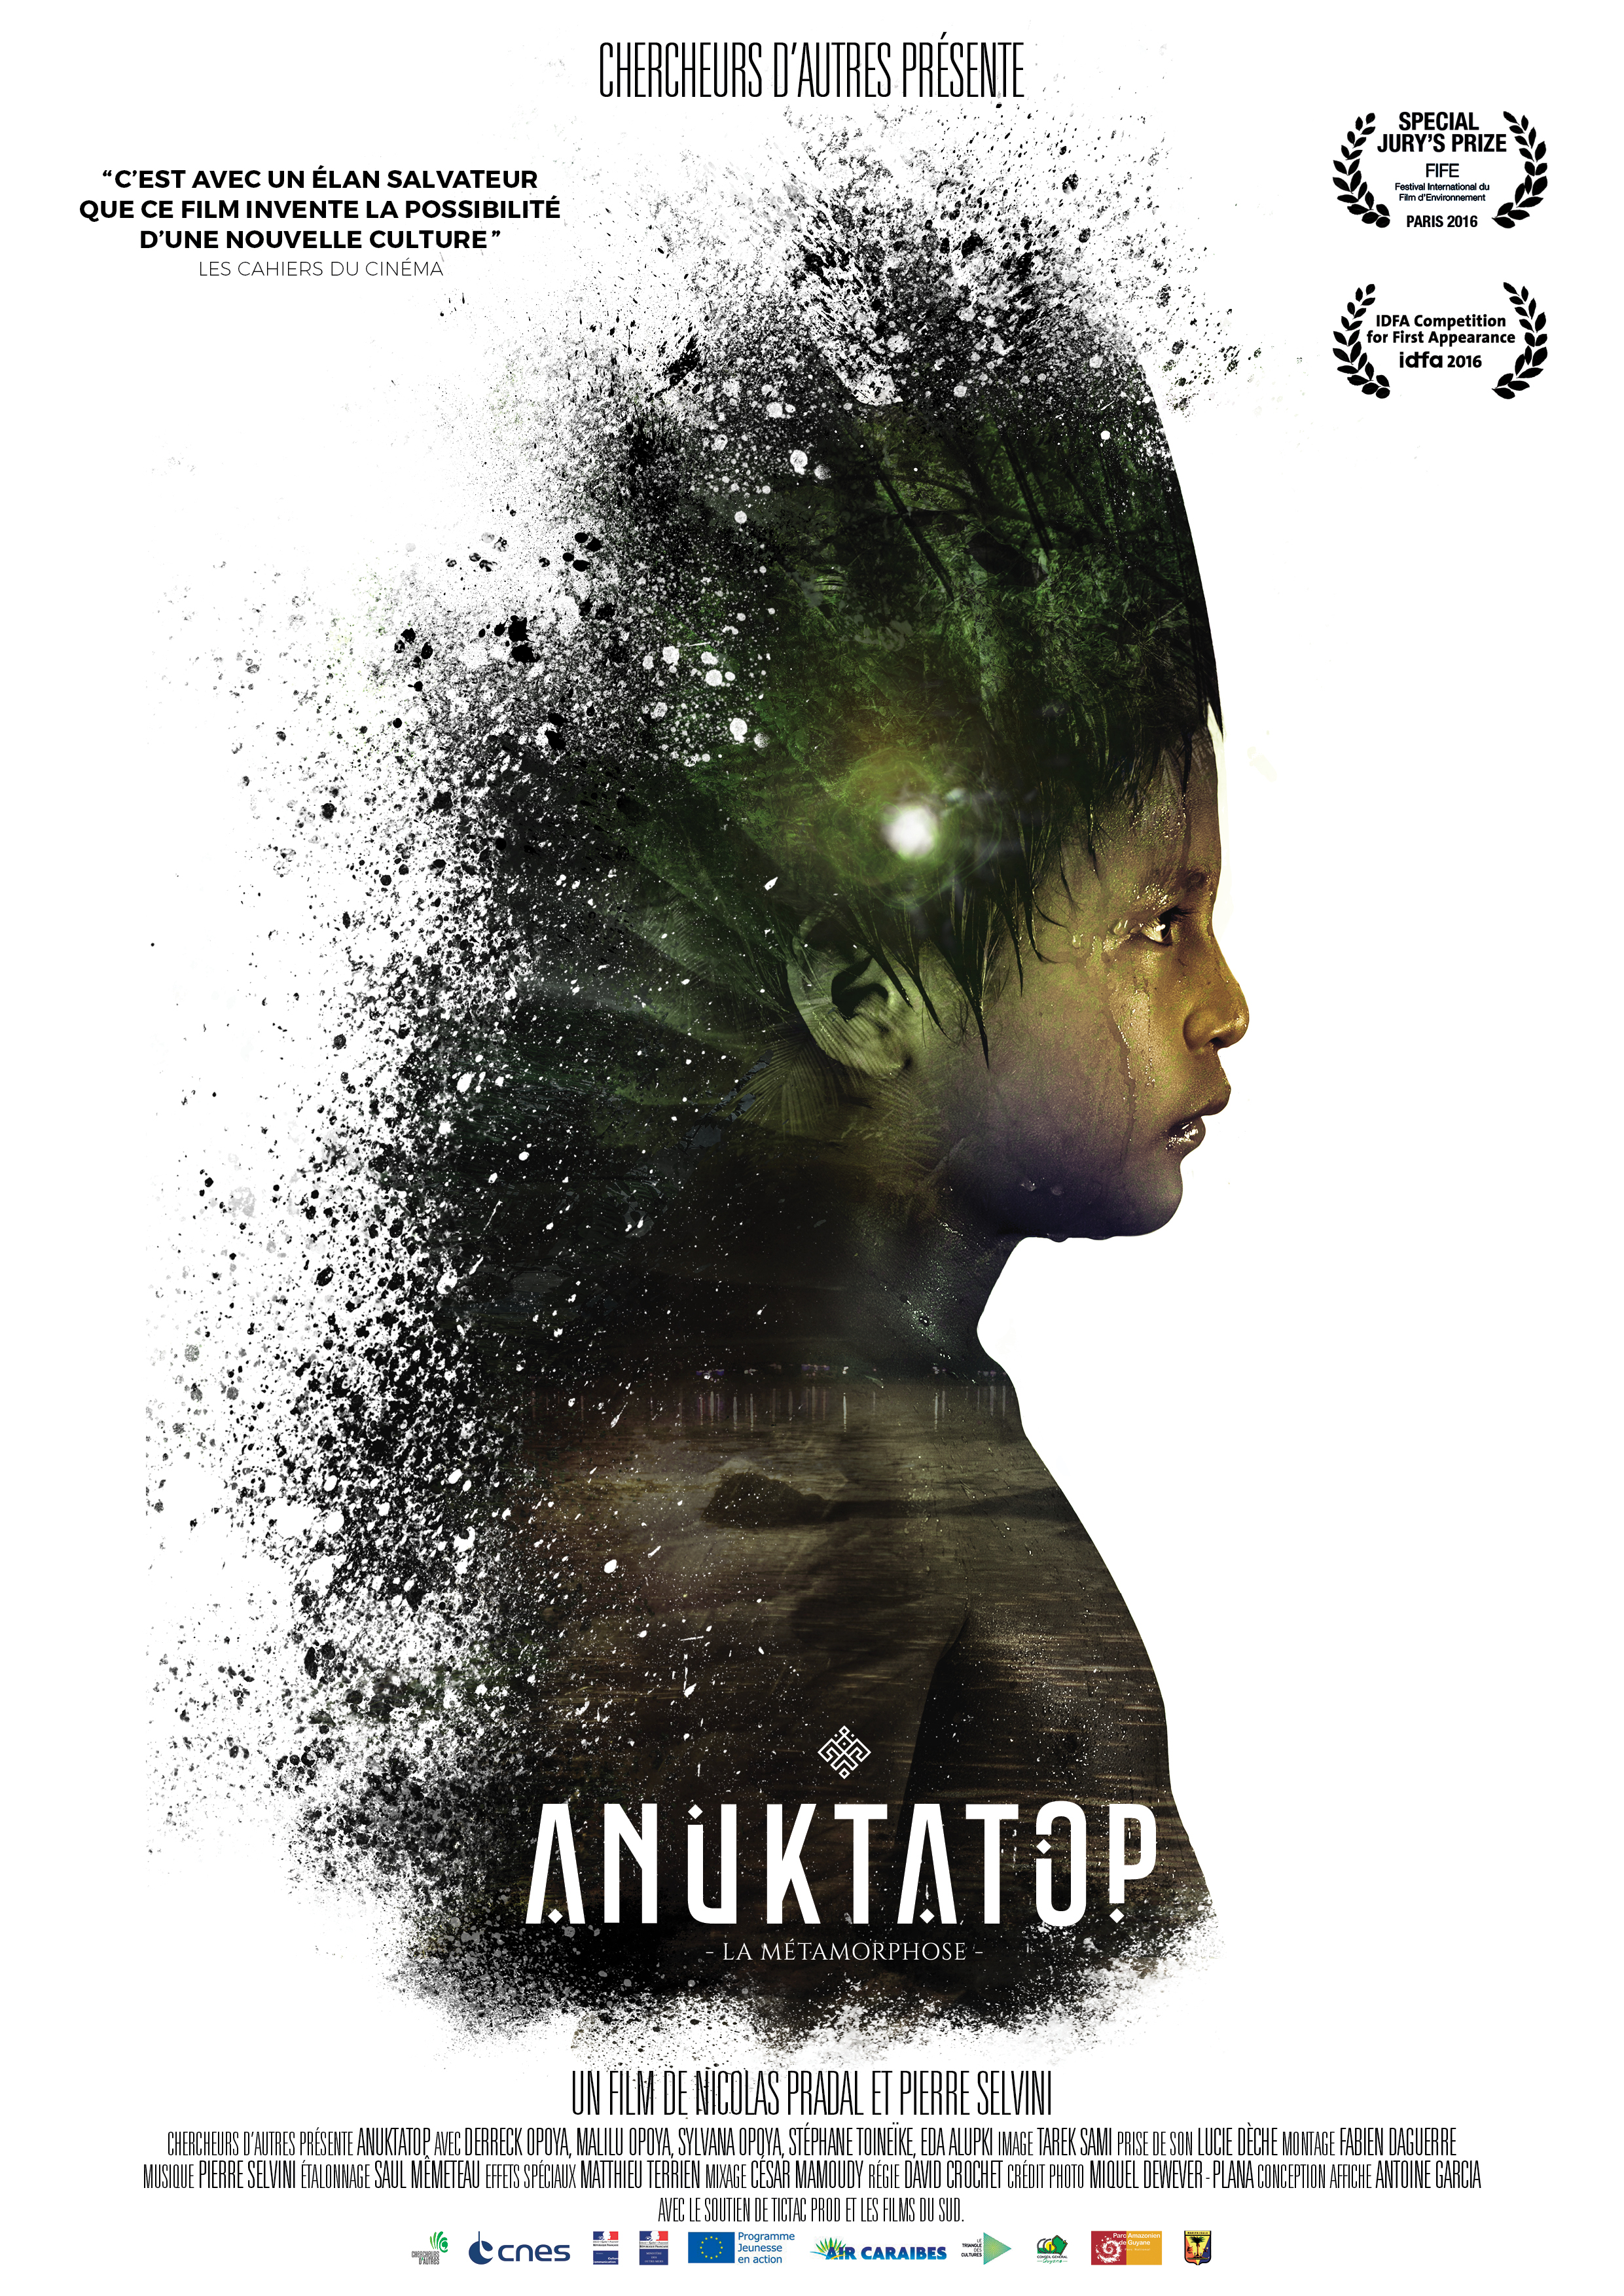 Lire la suite à propos de l’article Commandez le DVD d’Anuktatop!